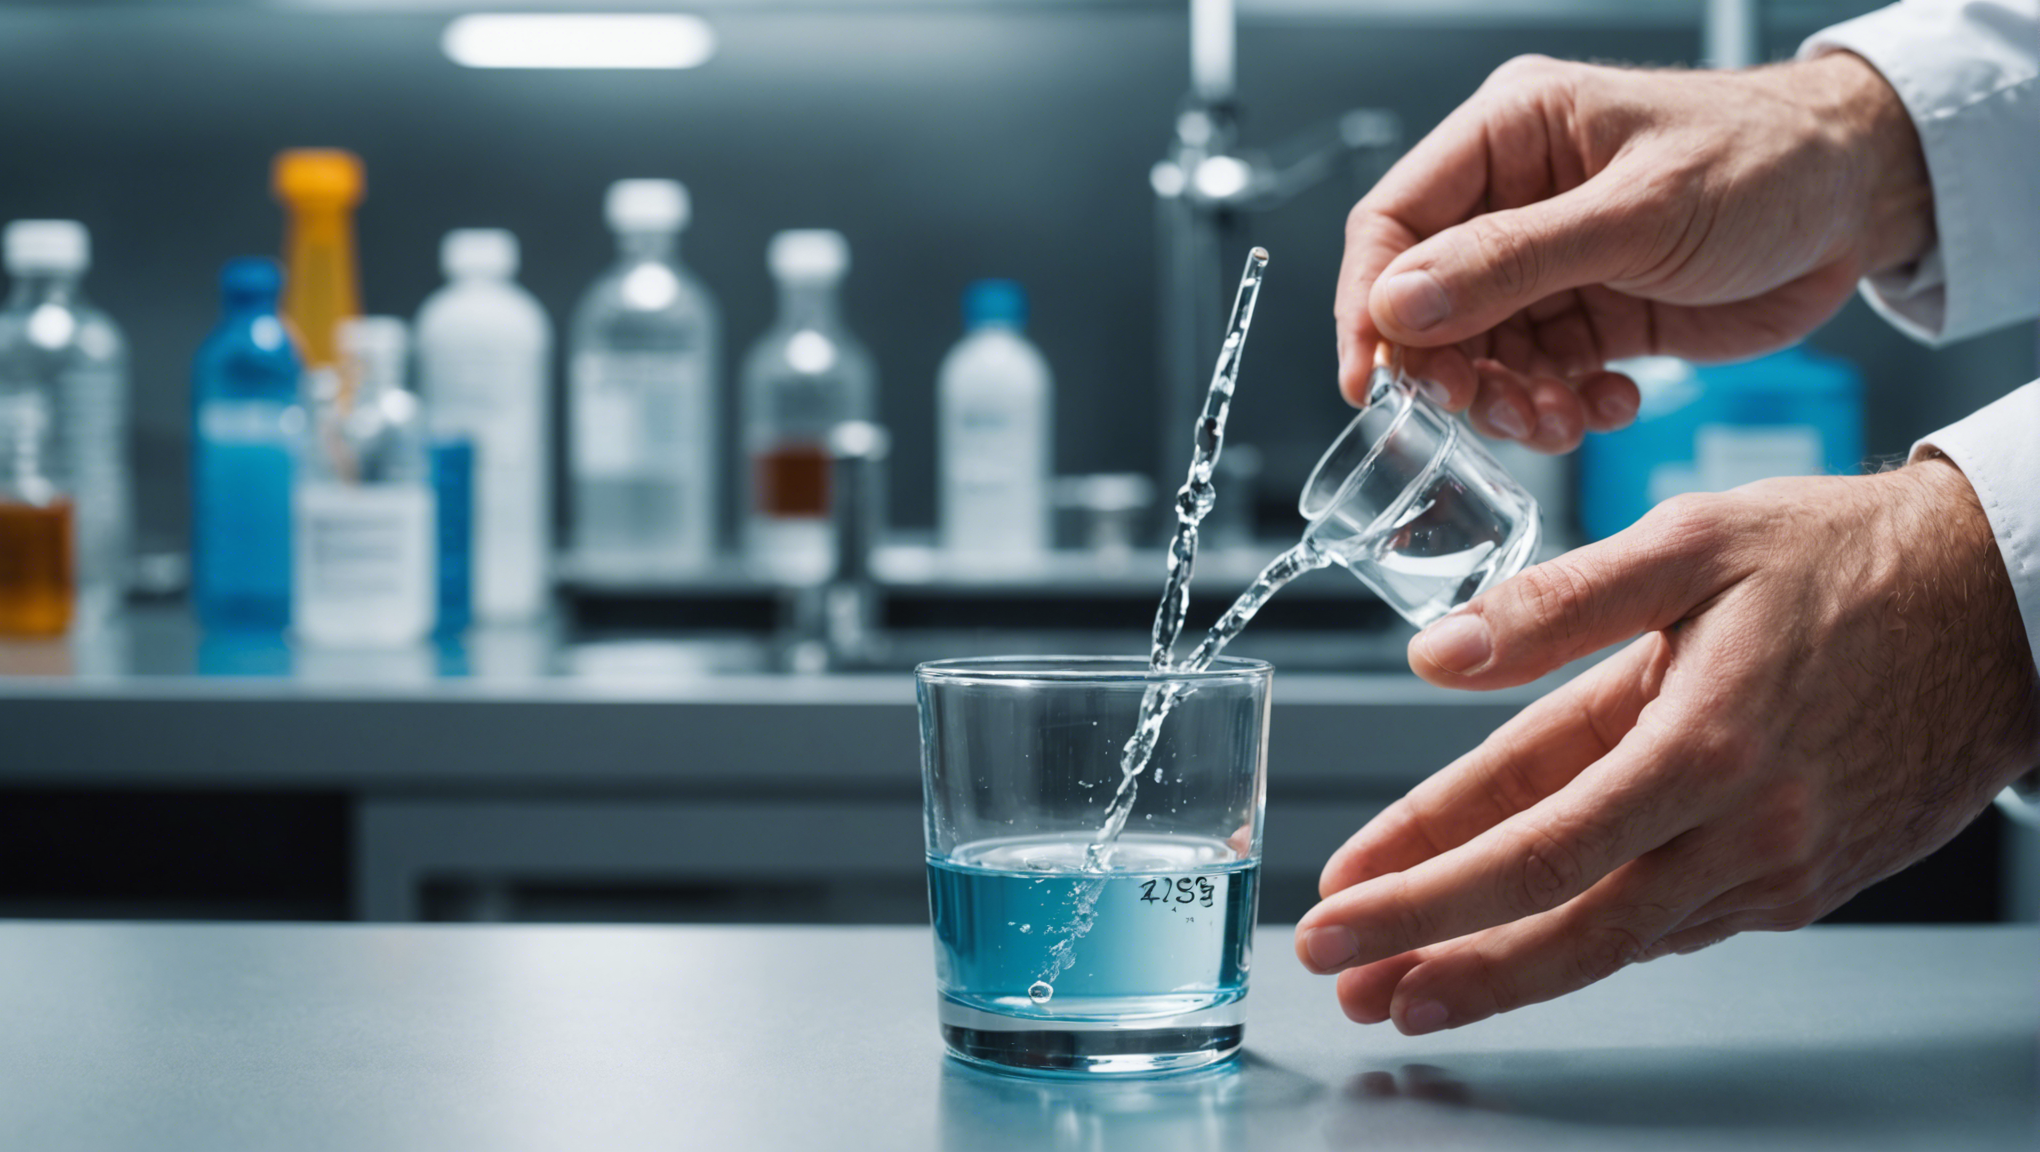 découvrez l'importance cruciale d'analyser l'eau dans un laboratoire spécialisé et les raisons qui en font une étape indispensable pour garantir sa qualité et sa sécurité.